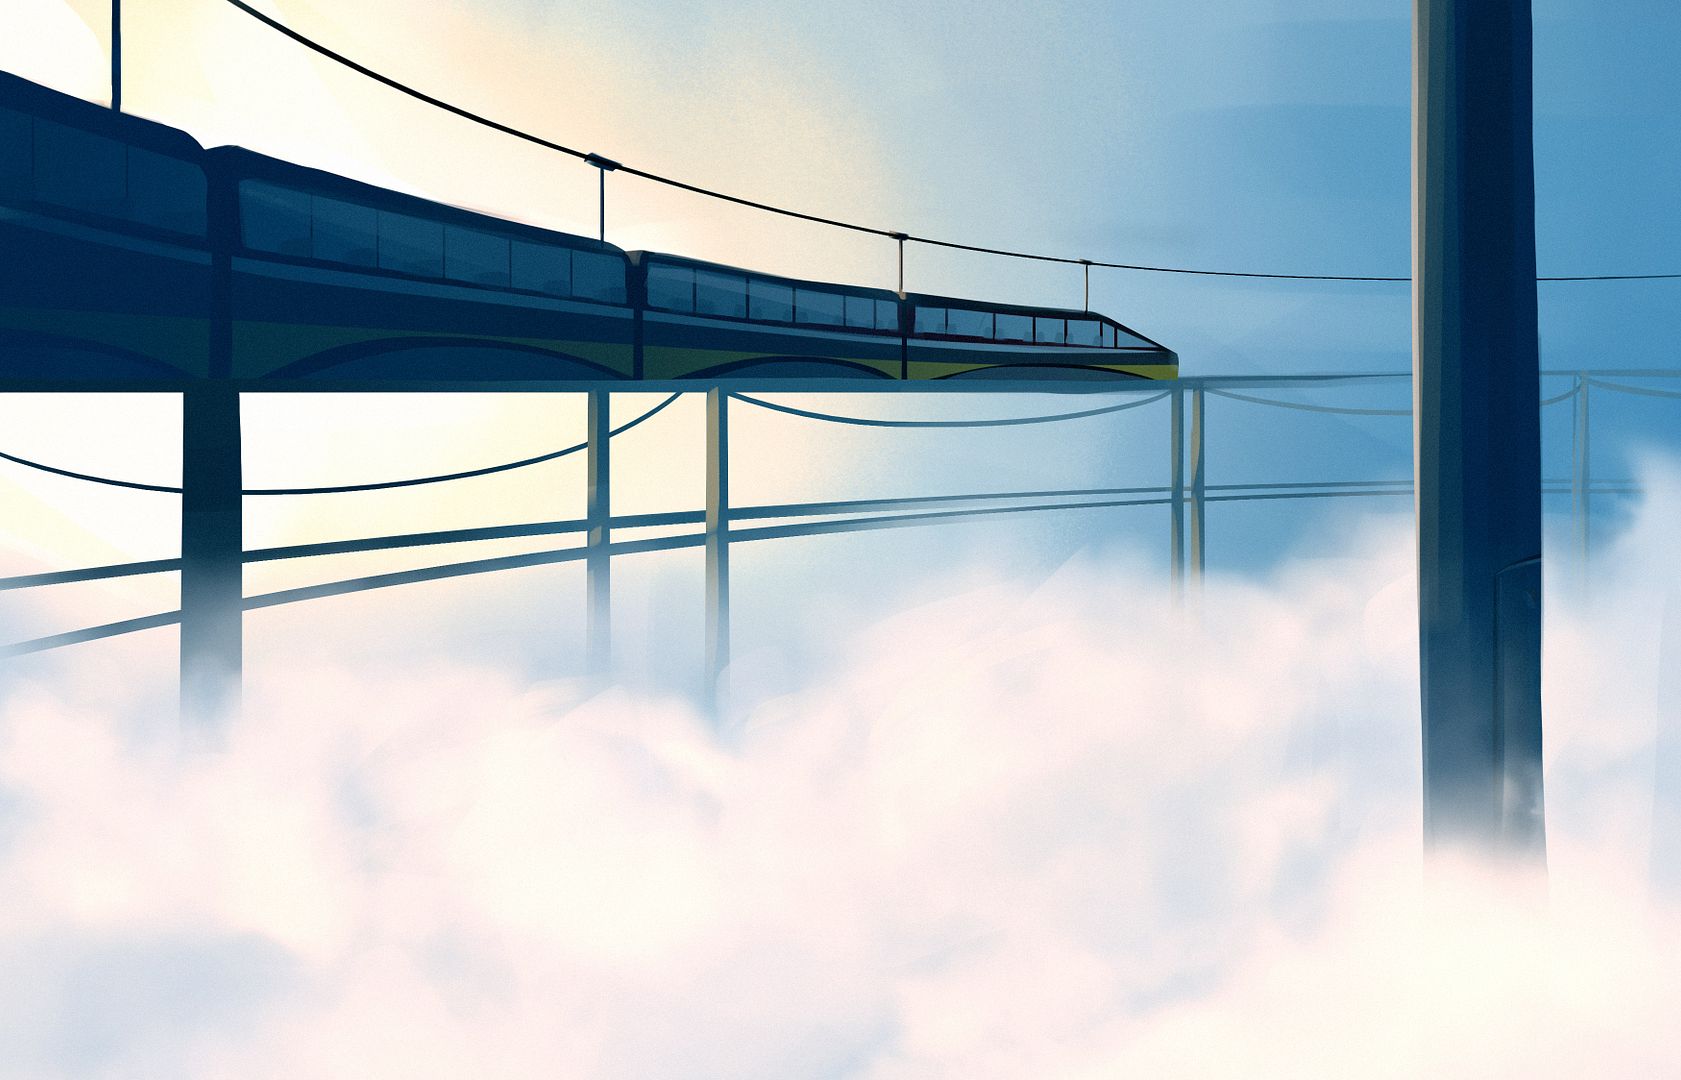 [Image: elevated-railway.jpg]